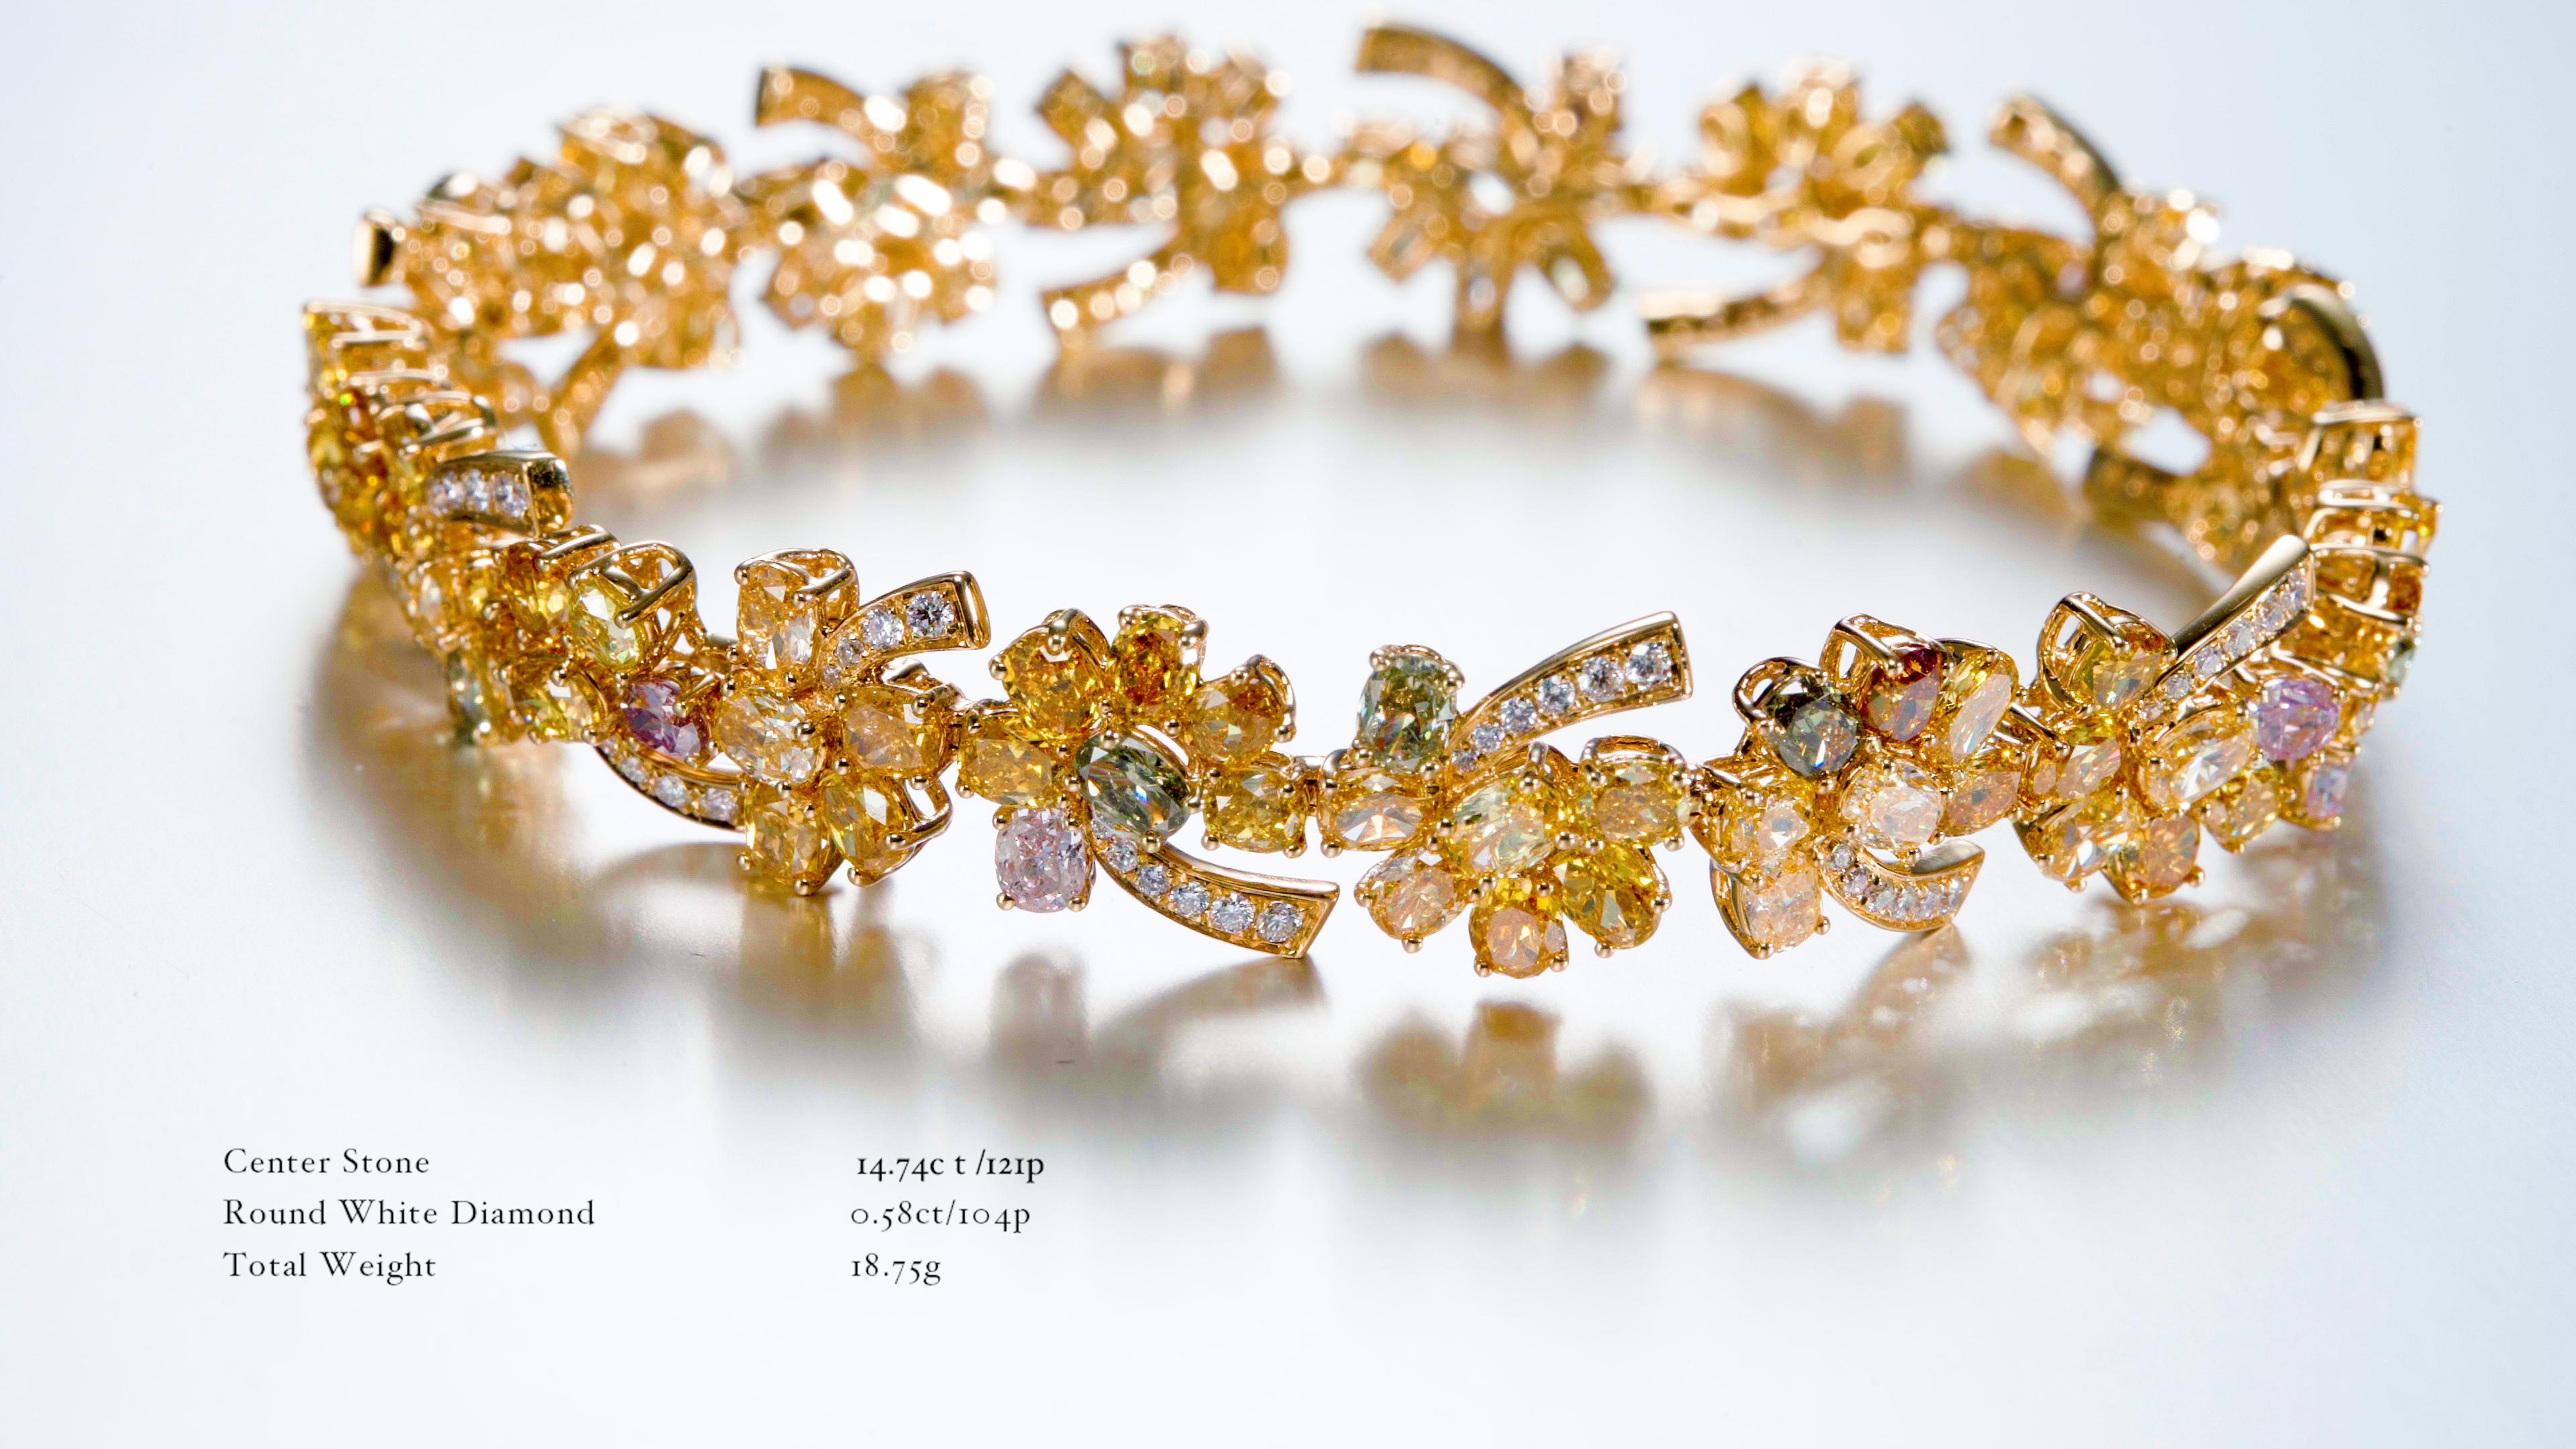 Dieser exquisite und einzigartige Ring besticht durch ein Kaleidoskop natürlicher Fancy-Diamanten in einer Vielzahl von Farben und Formen. Der runde weiße Diamant in der Mitte des eleganten 18-karätigen Goldbandes ist von einer Reihe von